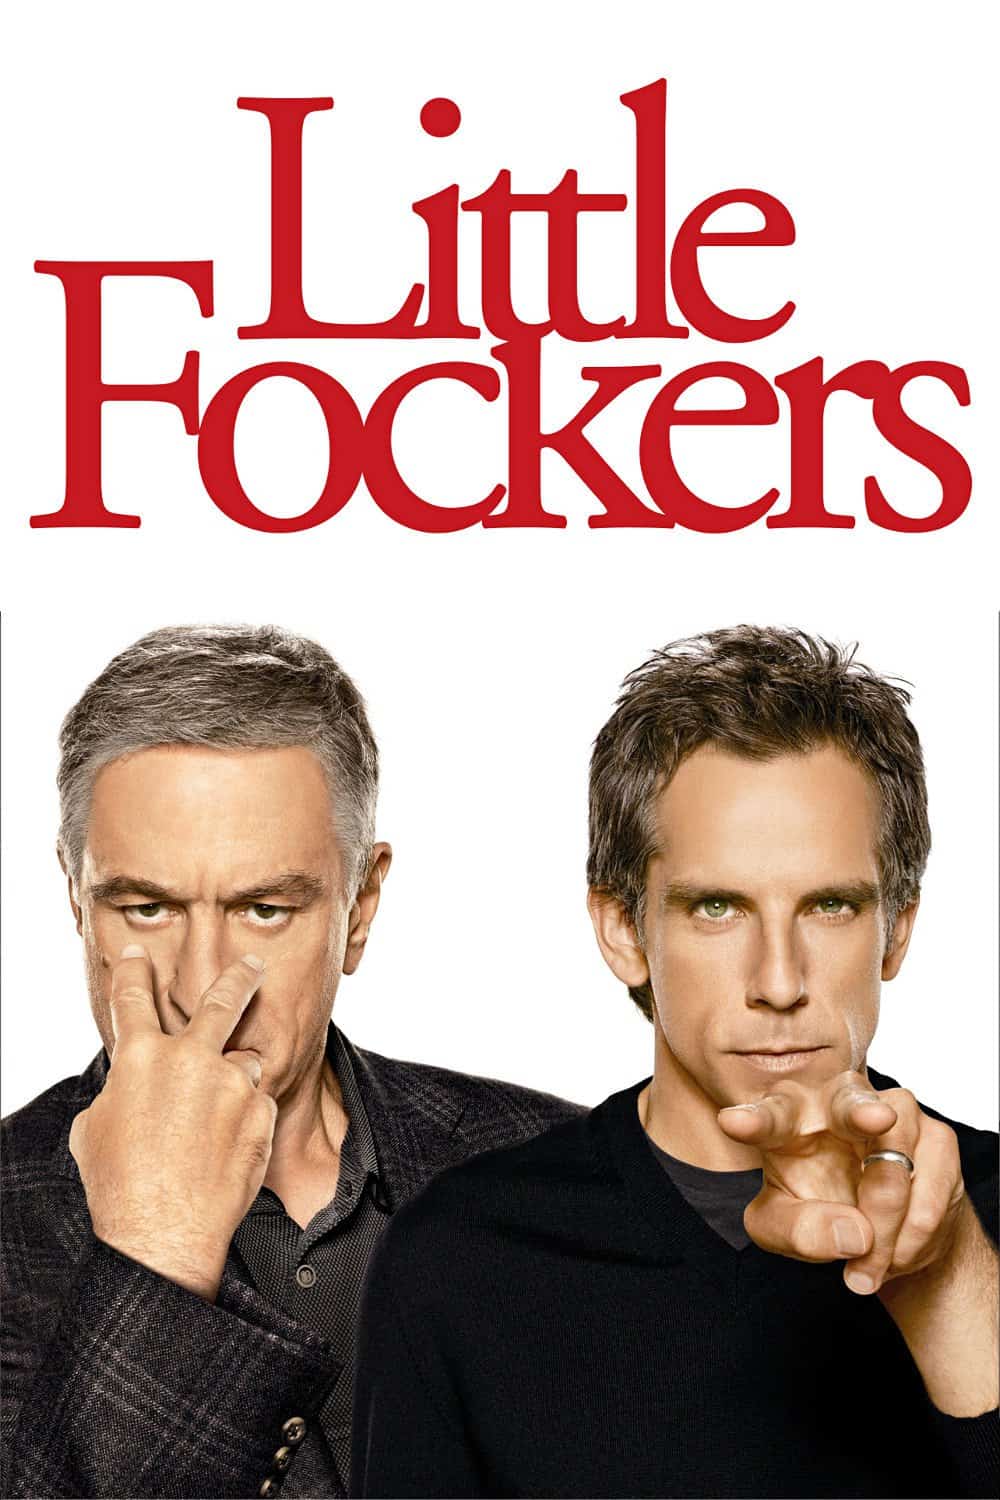 Little Fockers, 2010 